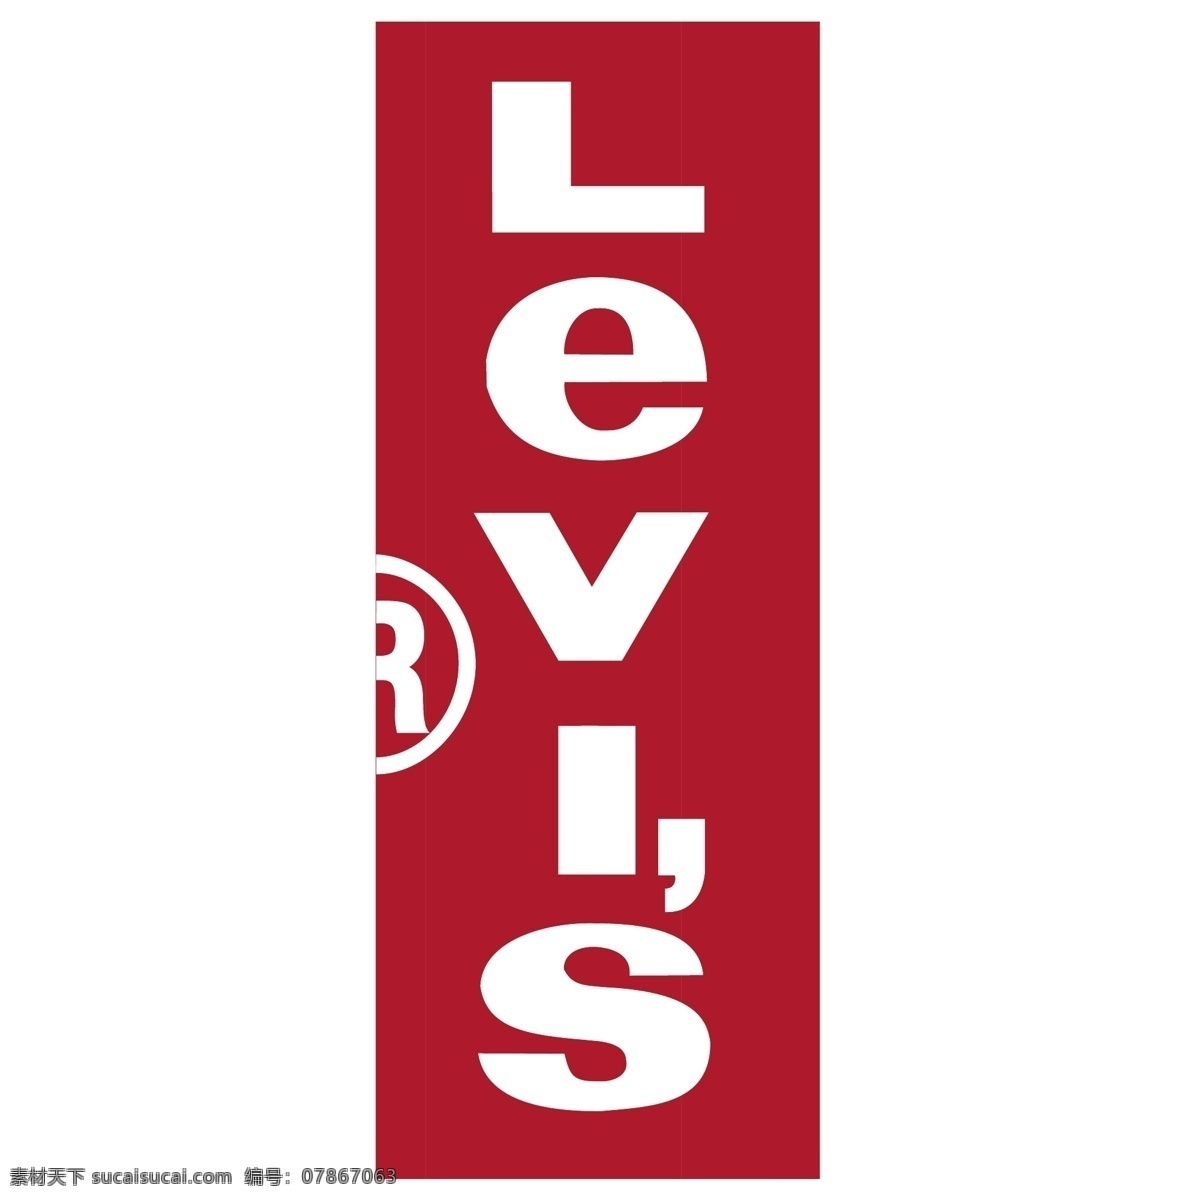 李维斯99 矢量标志下载 免费矢量标识 商标 品牌标识 标识 矢量 免费 品牌 公司 白色